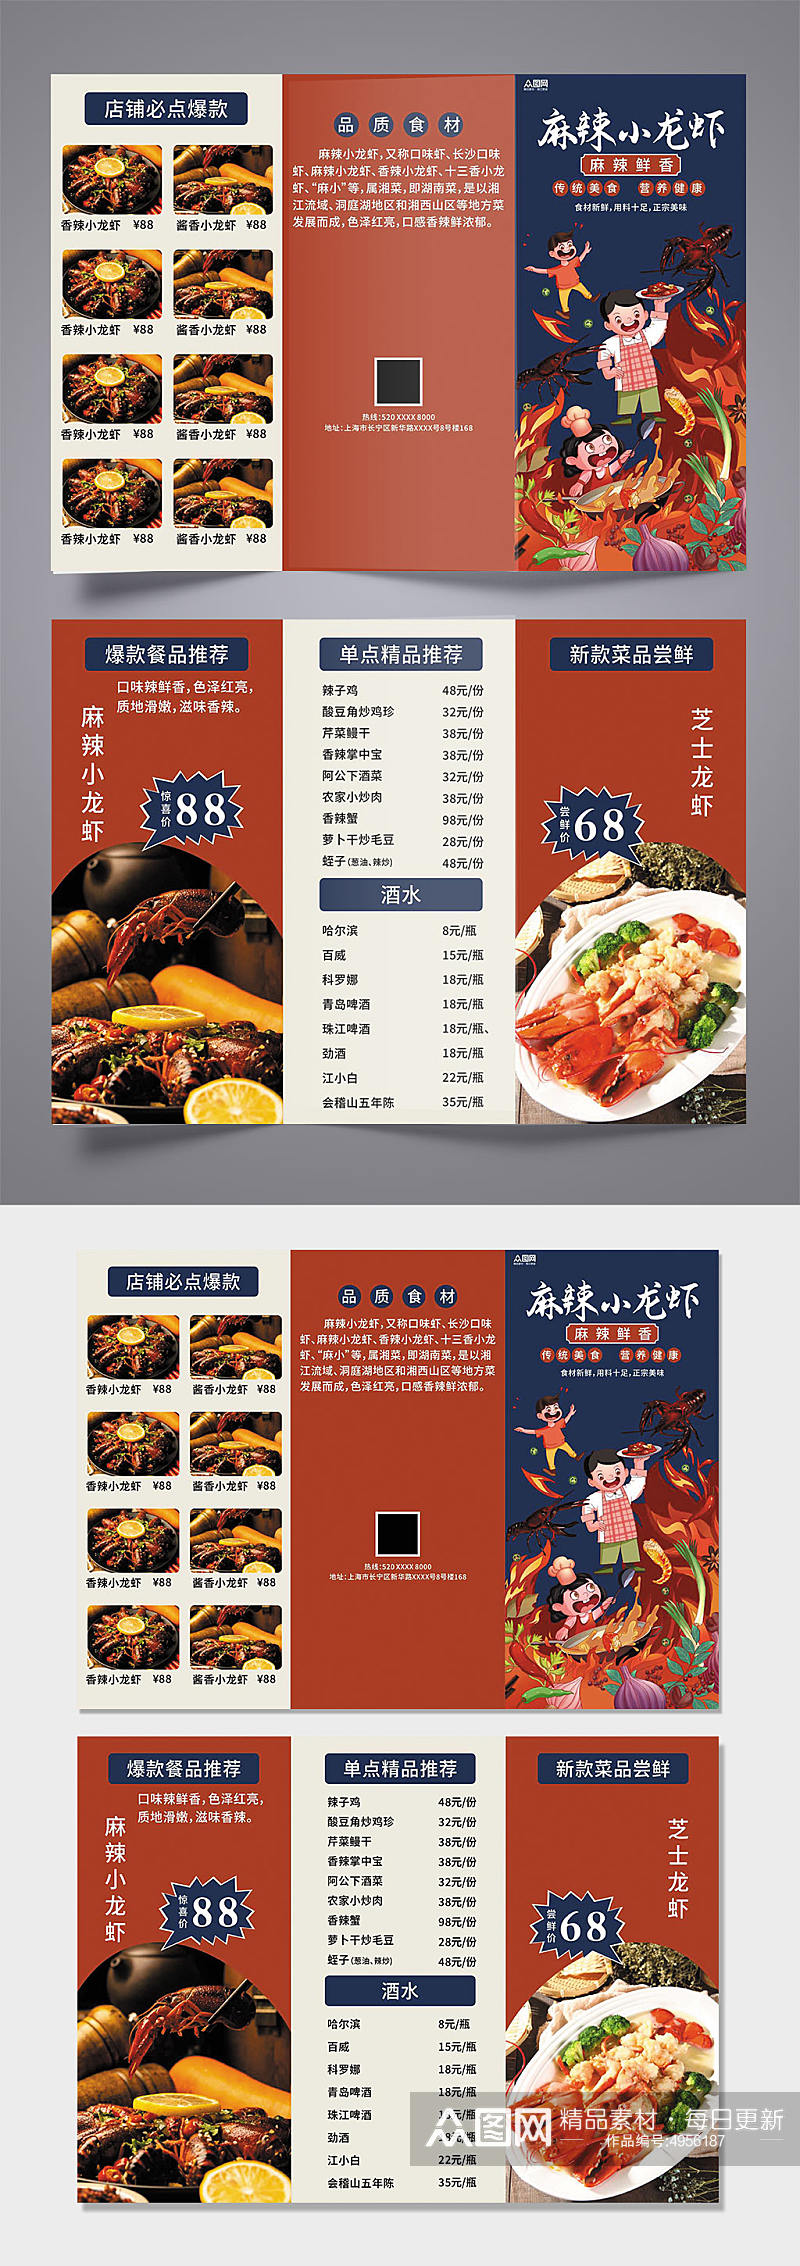 麻辣小龙虾美食餐饮三折页菜单素材